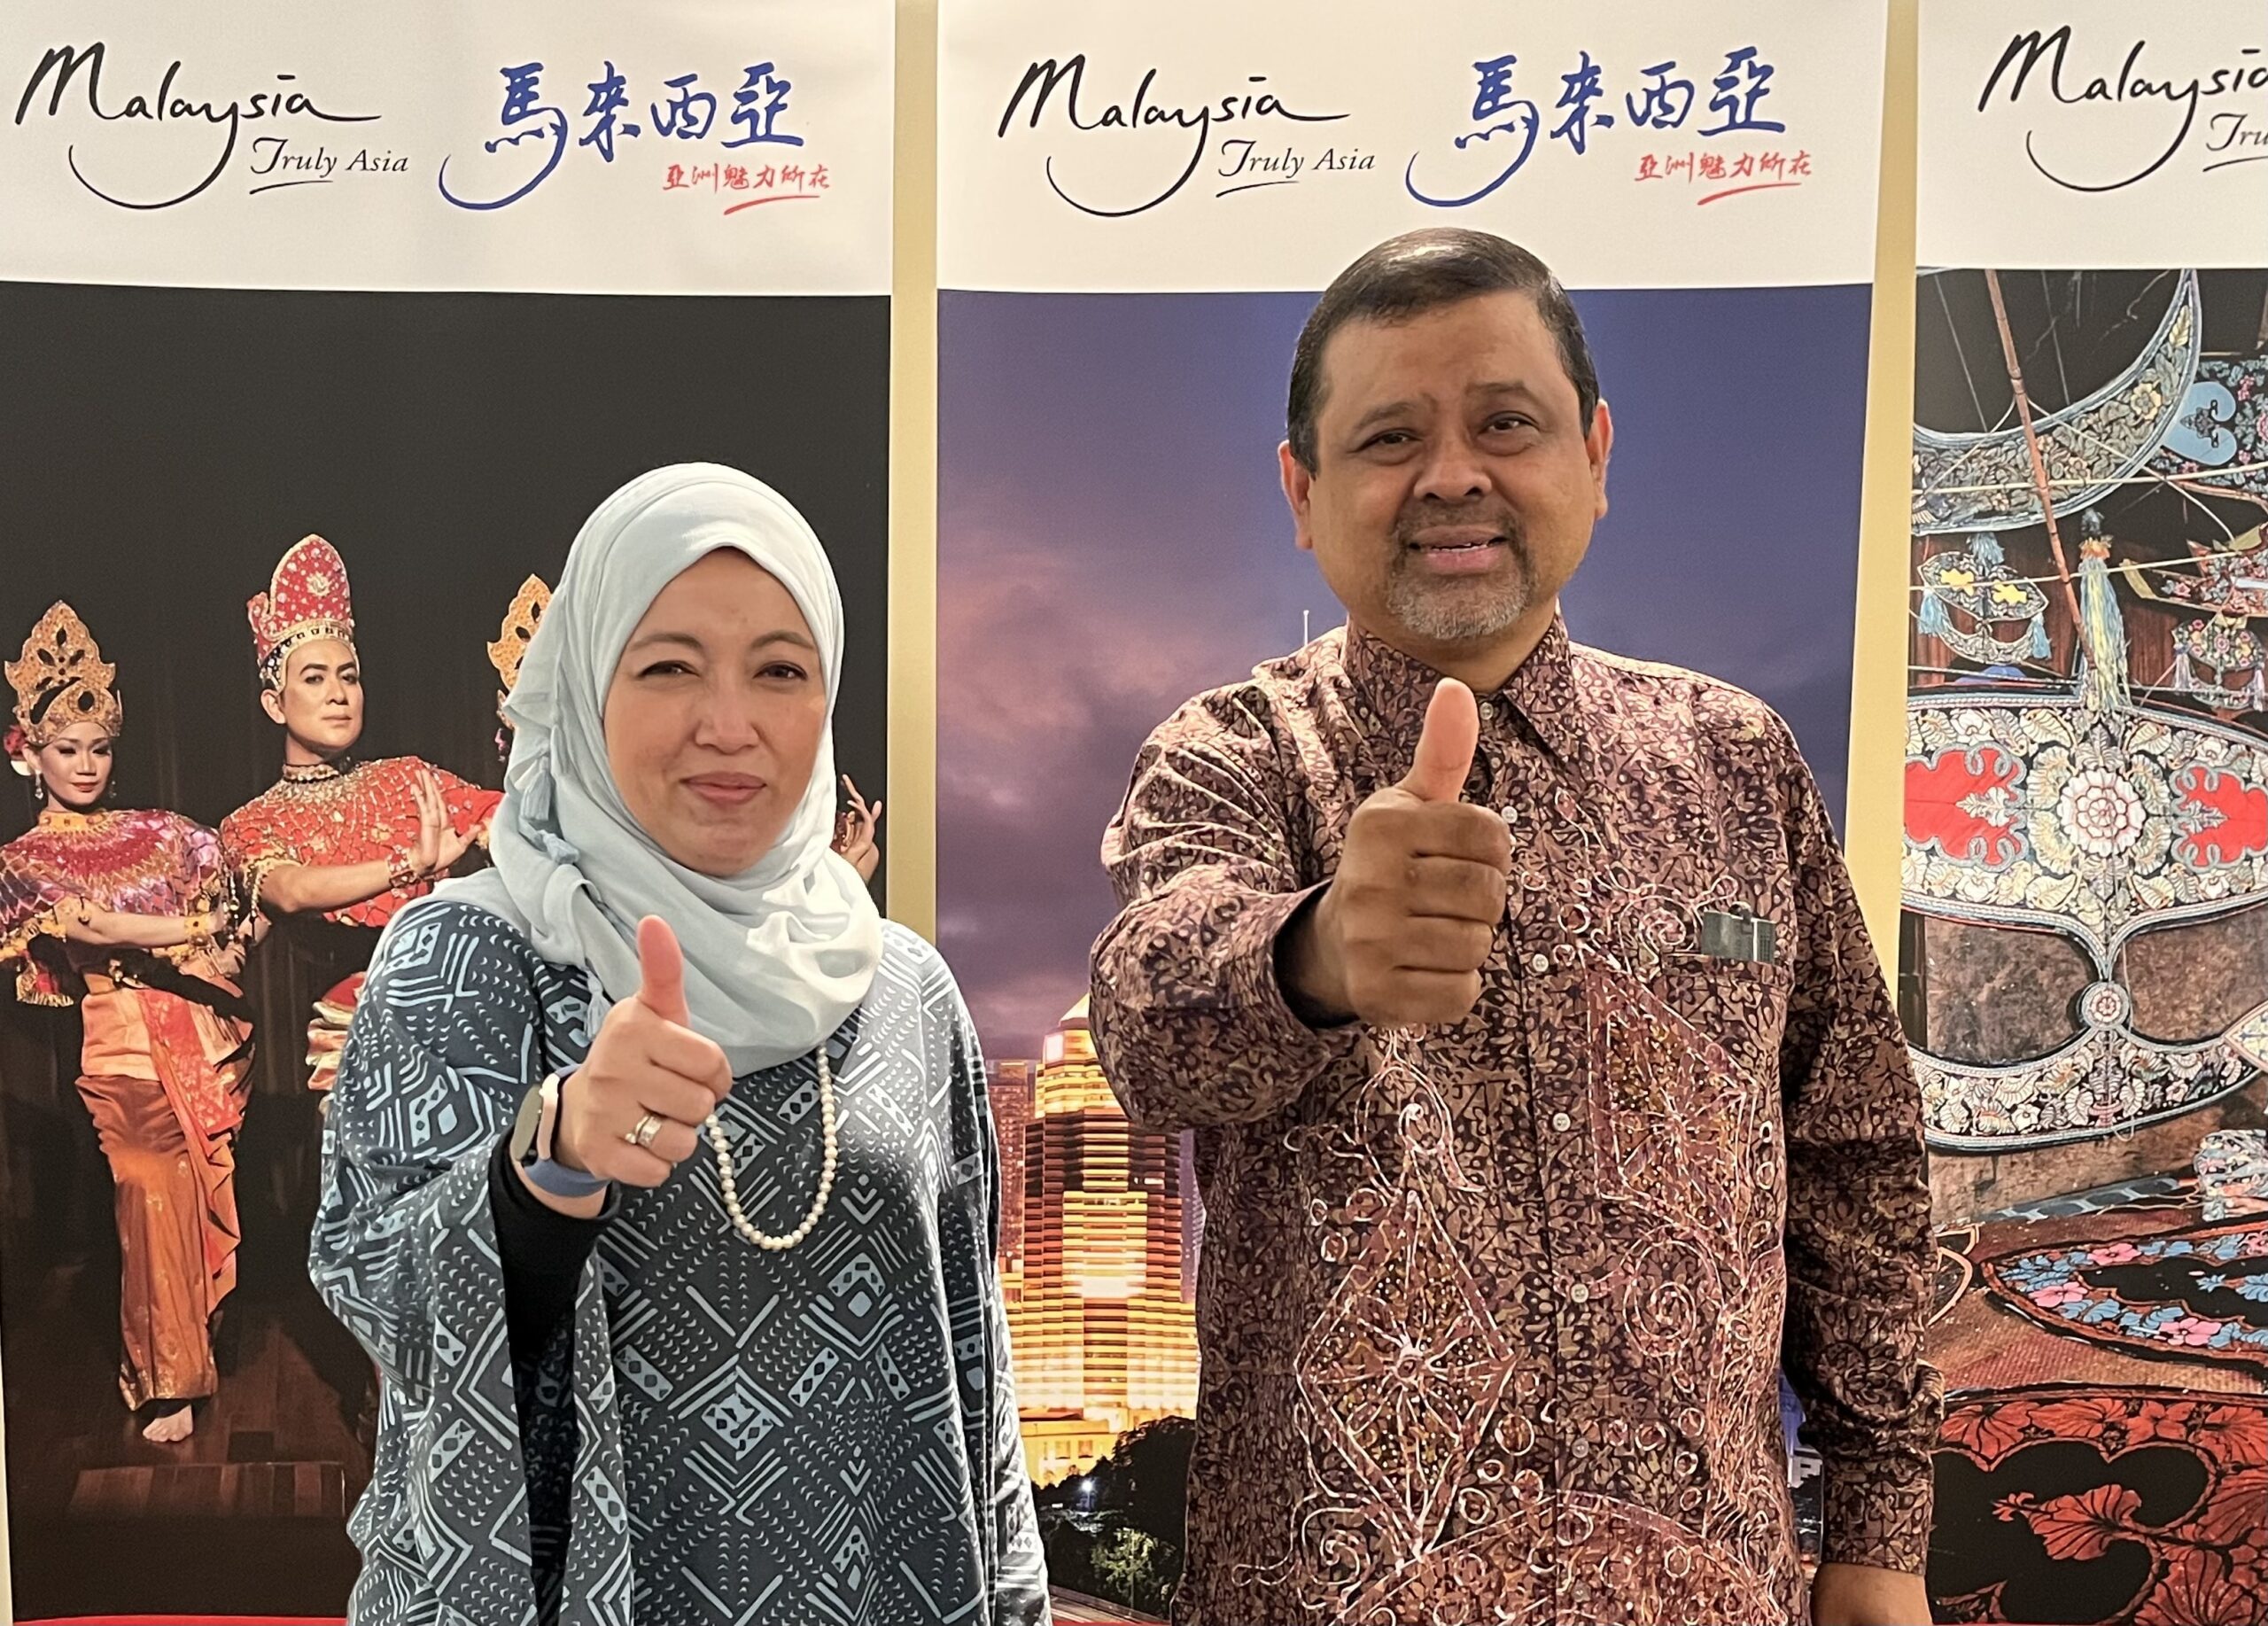 馬來西亞觀光局為重啟國境做足準備 在台舉辦台灣業者推介會 – yamNews蕃新聞